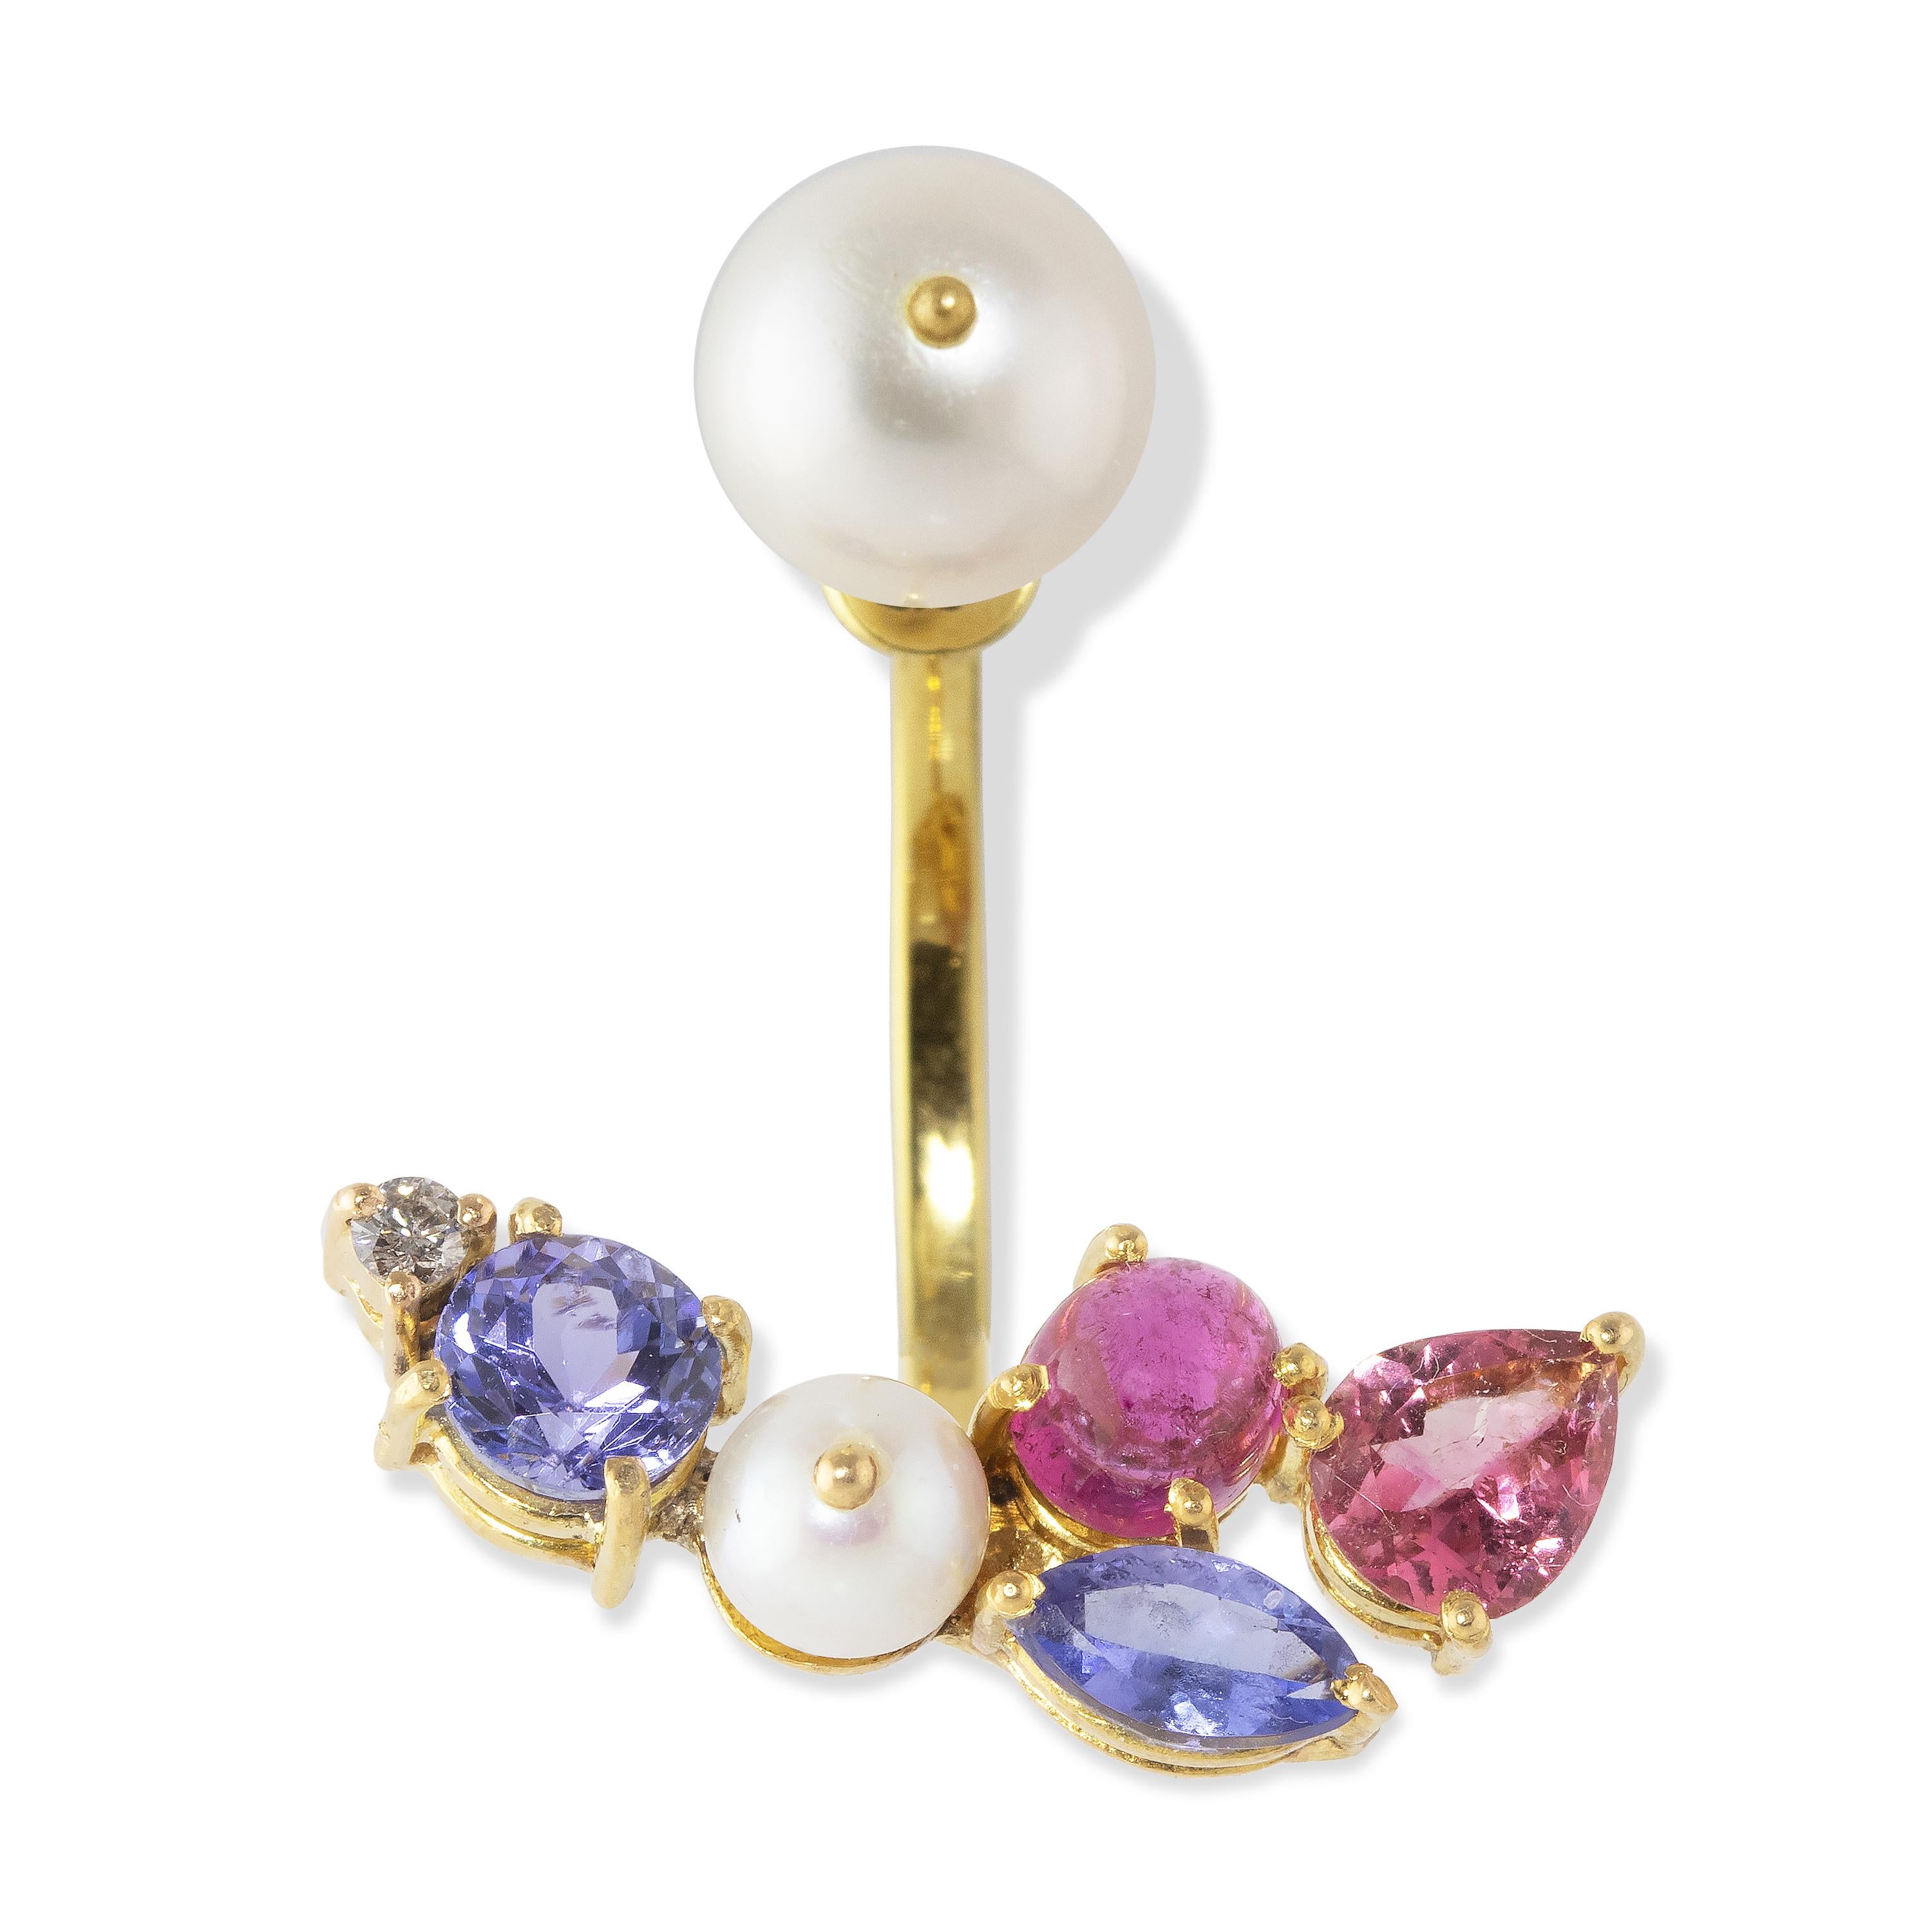 Dramatischer und eleganter schwebender Perlenohrring. Dieser 18-karätige Ohrring ist bogenförmig geformt, um der Kurve des Ohrs zu folgen, und besteht aus einer Schraubperle mit rosafarbenen Turmalinen, Tansaniten, Akoya-Perlen und einem